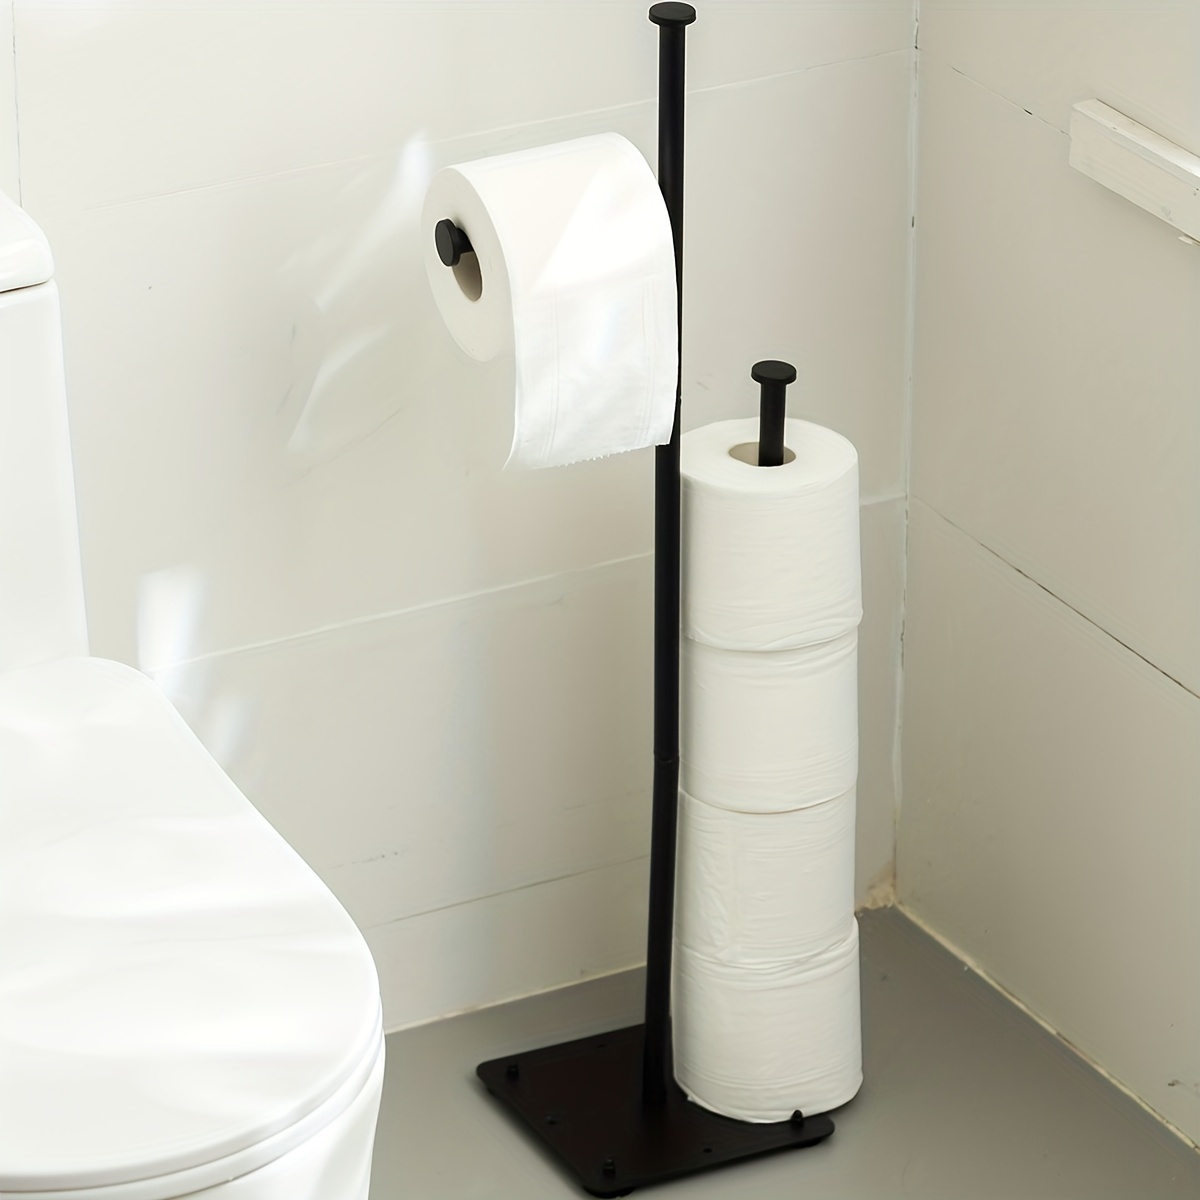 TreeLen Toilet Paper Holder Stand Tissue Holder for Bathroom Floor Sta